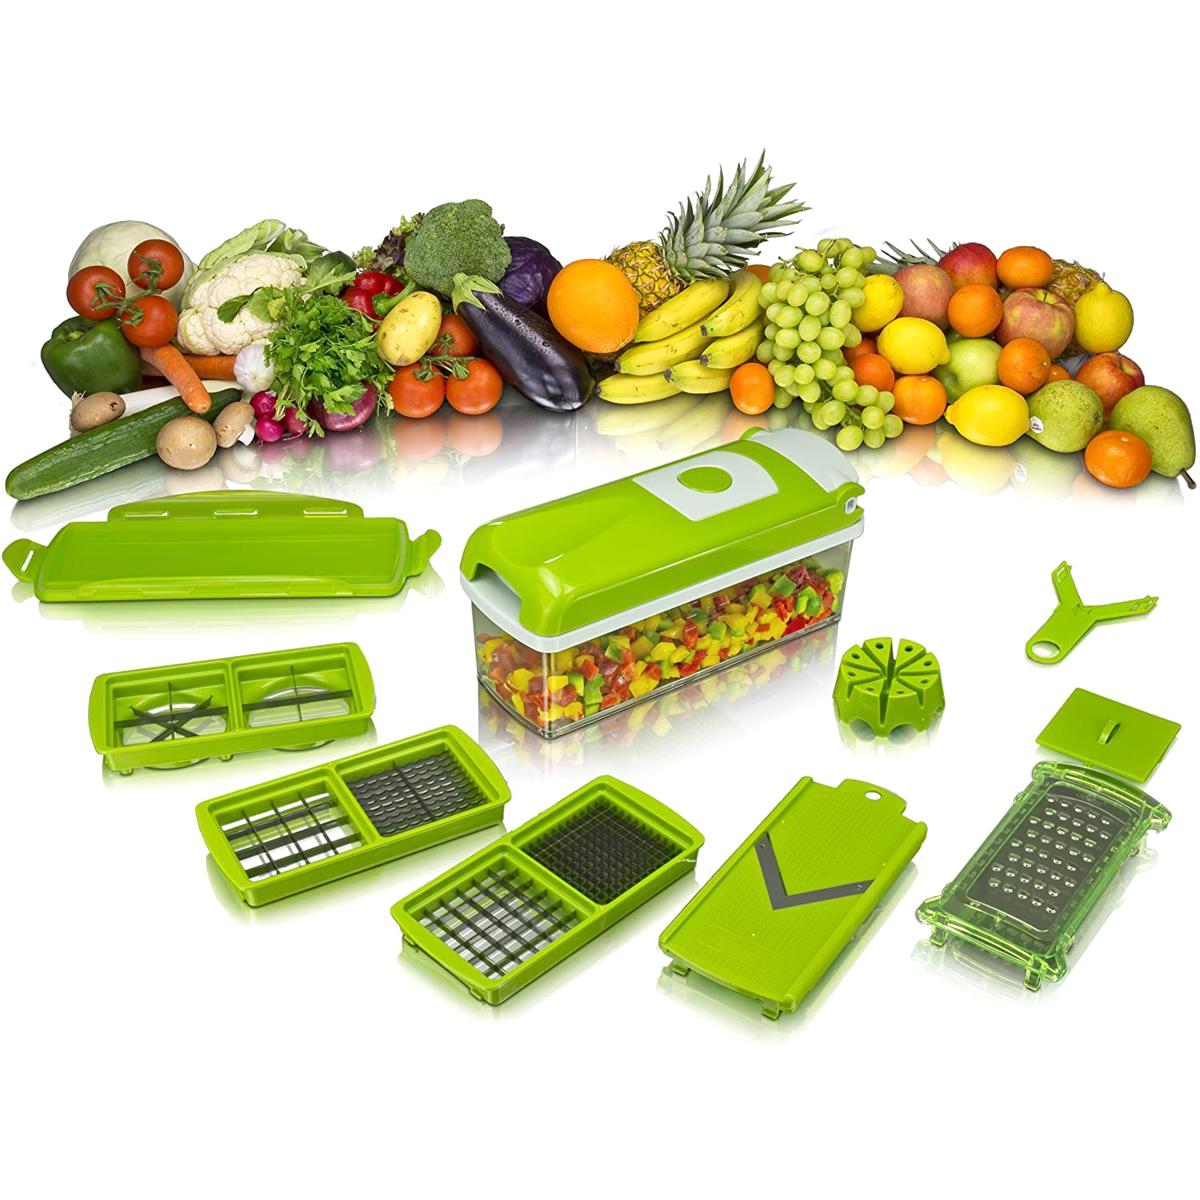 Многофункциональная овощерезка шинковка UFT VC4 терка для овощей и фруктов с контейнером + 5 насадок